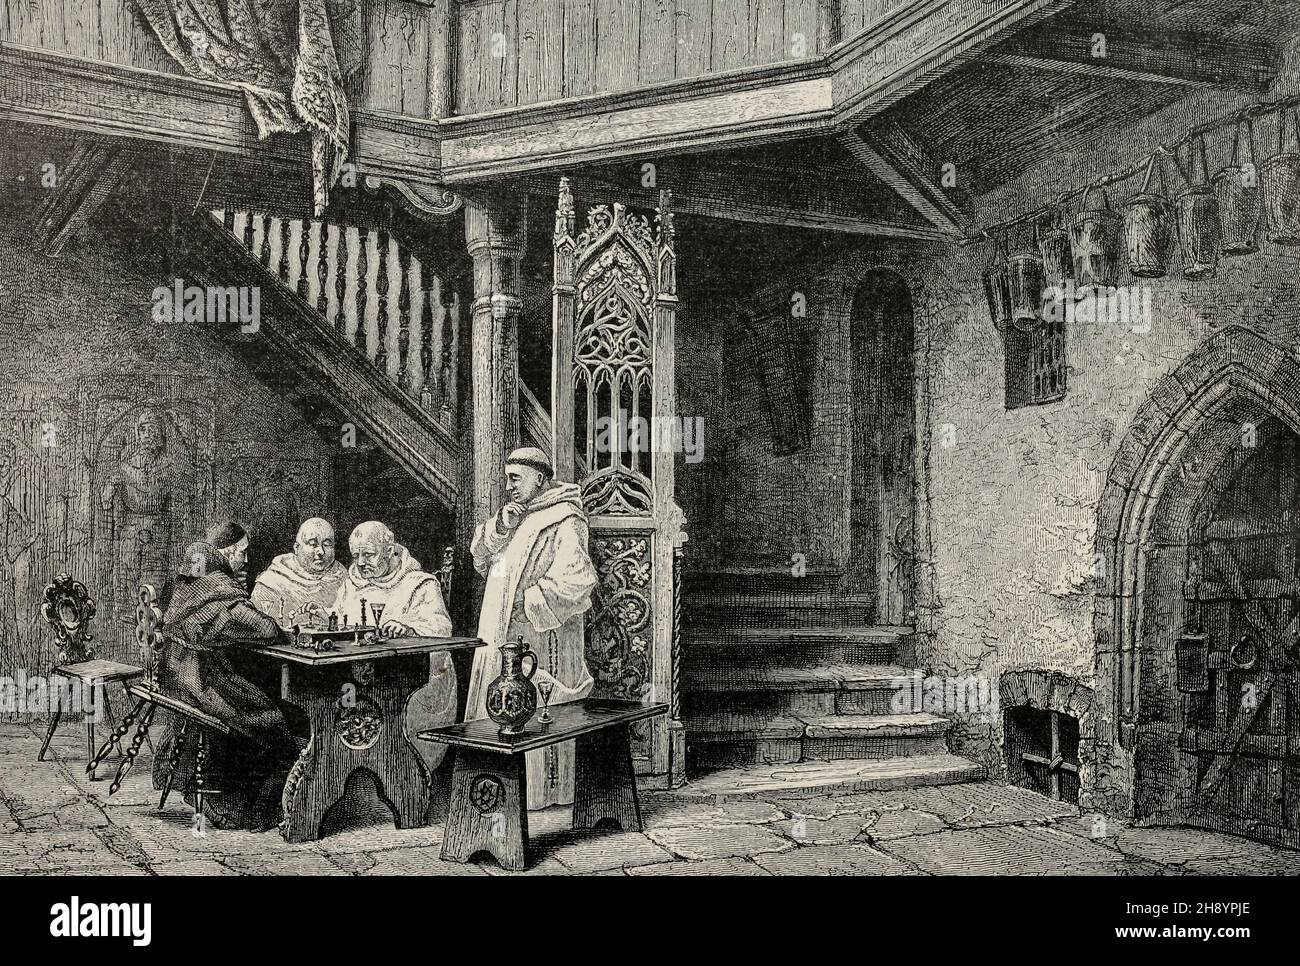 La vie dans un monastère espagnol, vers 1900 Banque D'Images